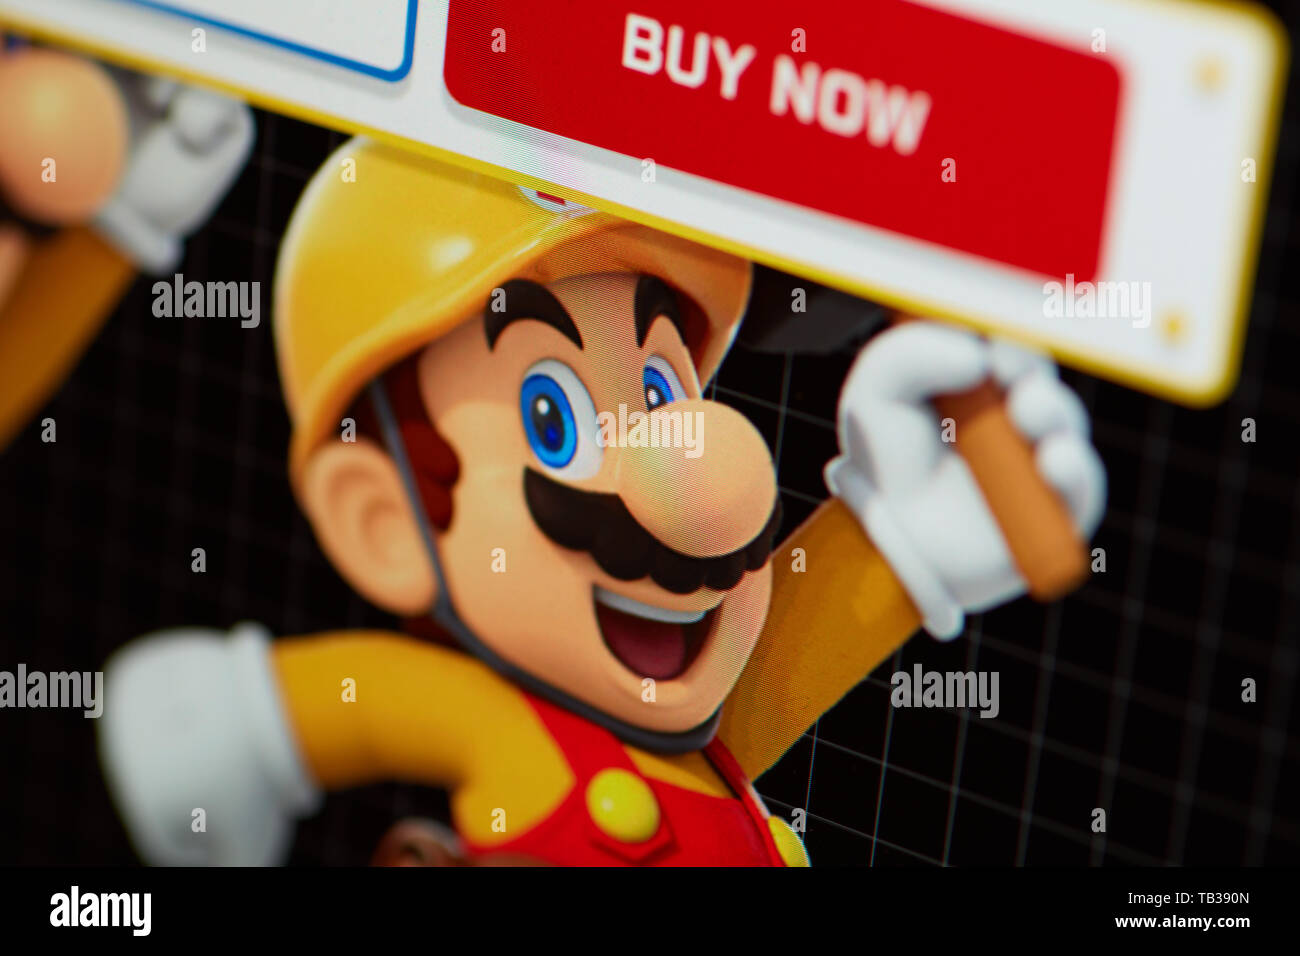 Prag - Mai 21, 2019: Closeup auf Super Mario - Charakter von Nintendo Plattform Video Game von der Seite Bildschirm fotografiert. Stockfoto